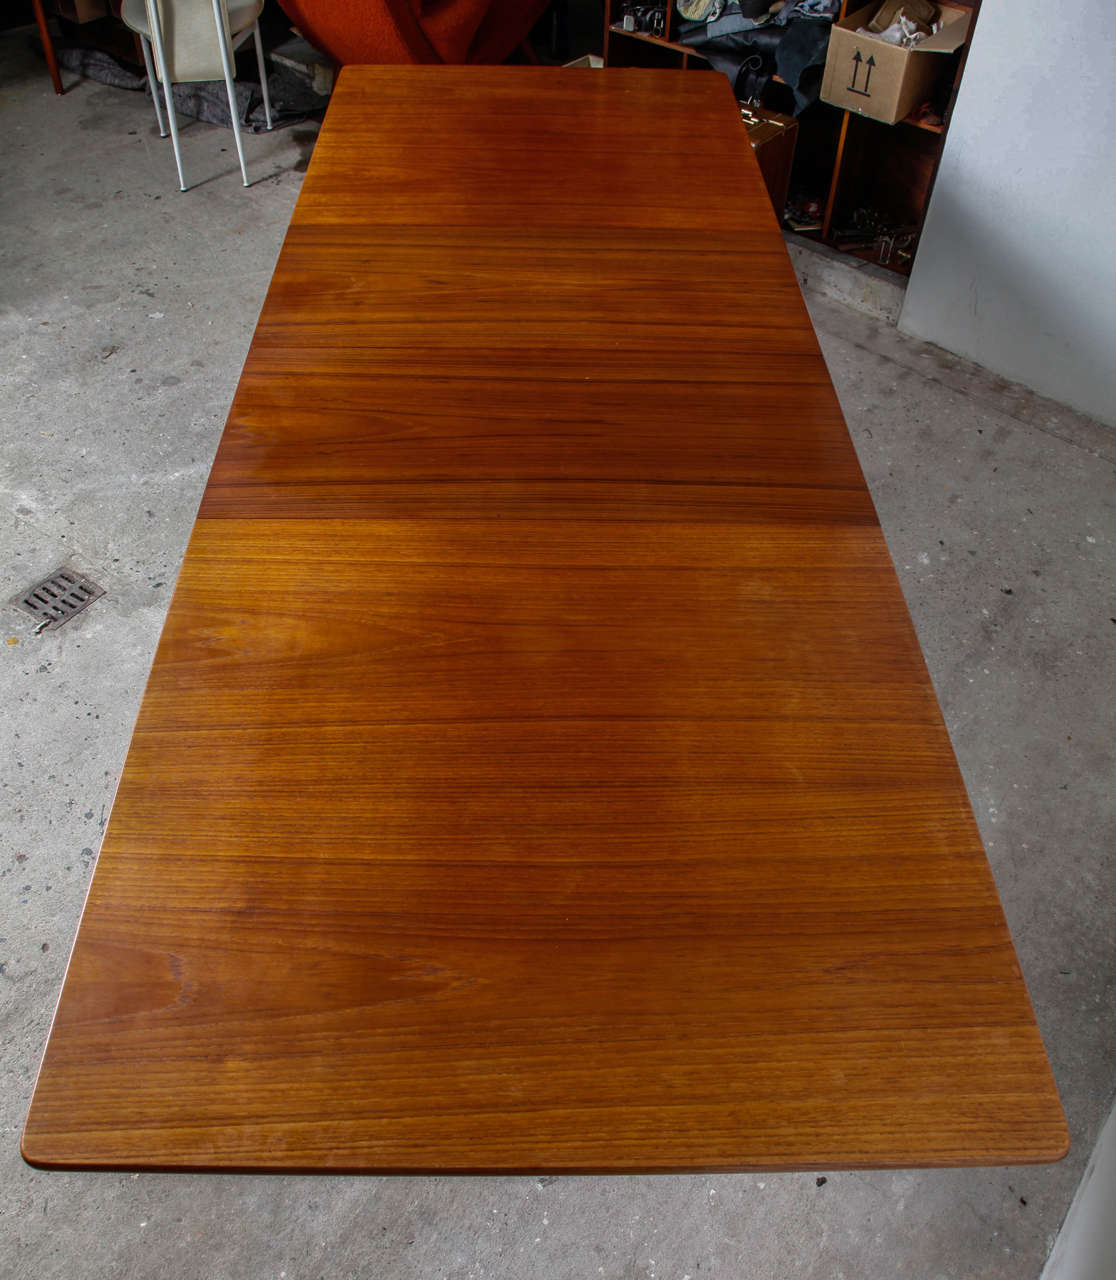 Teak Large Table Designed by Hans J. Wegner for Andreas Tuck, Denmark 1